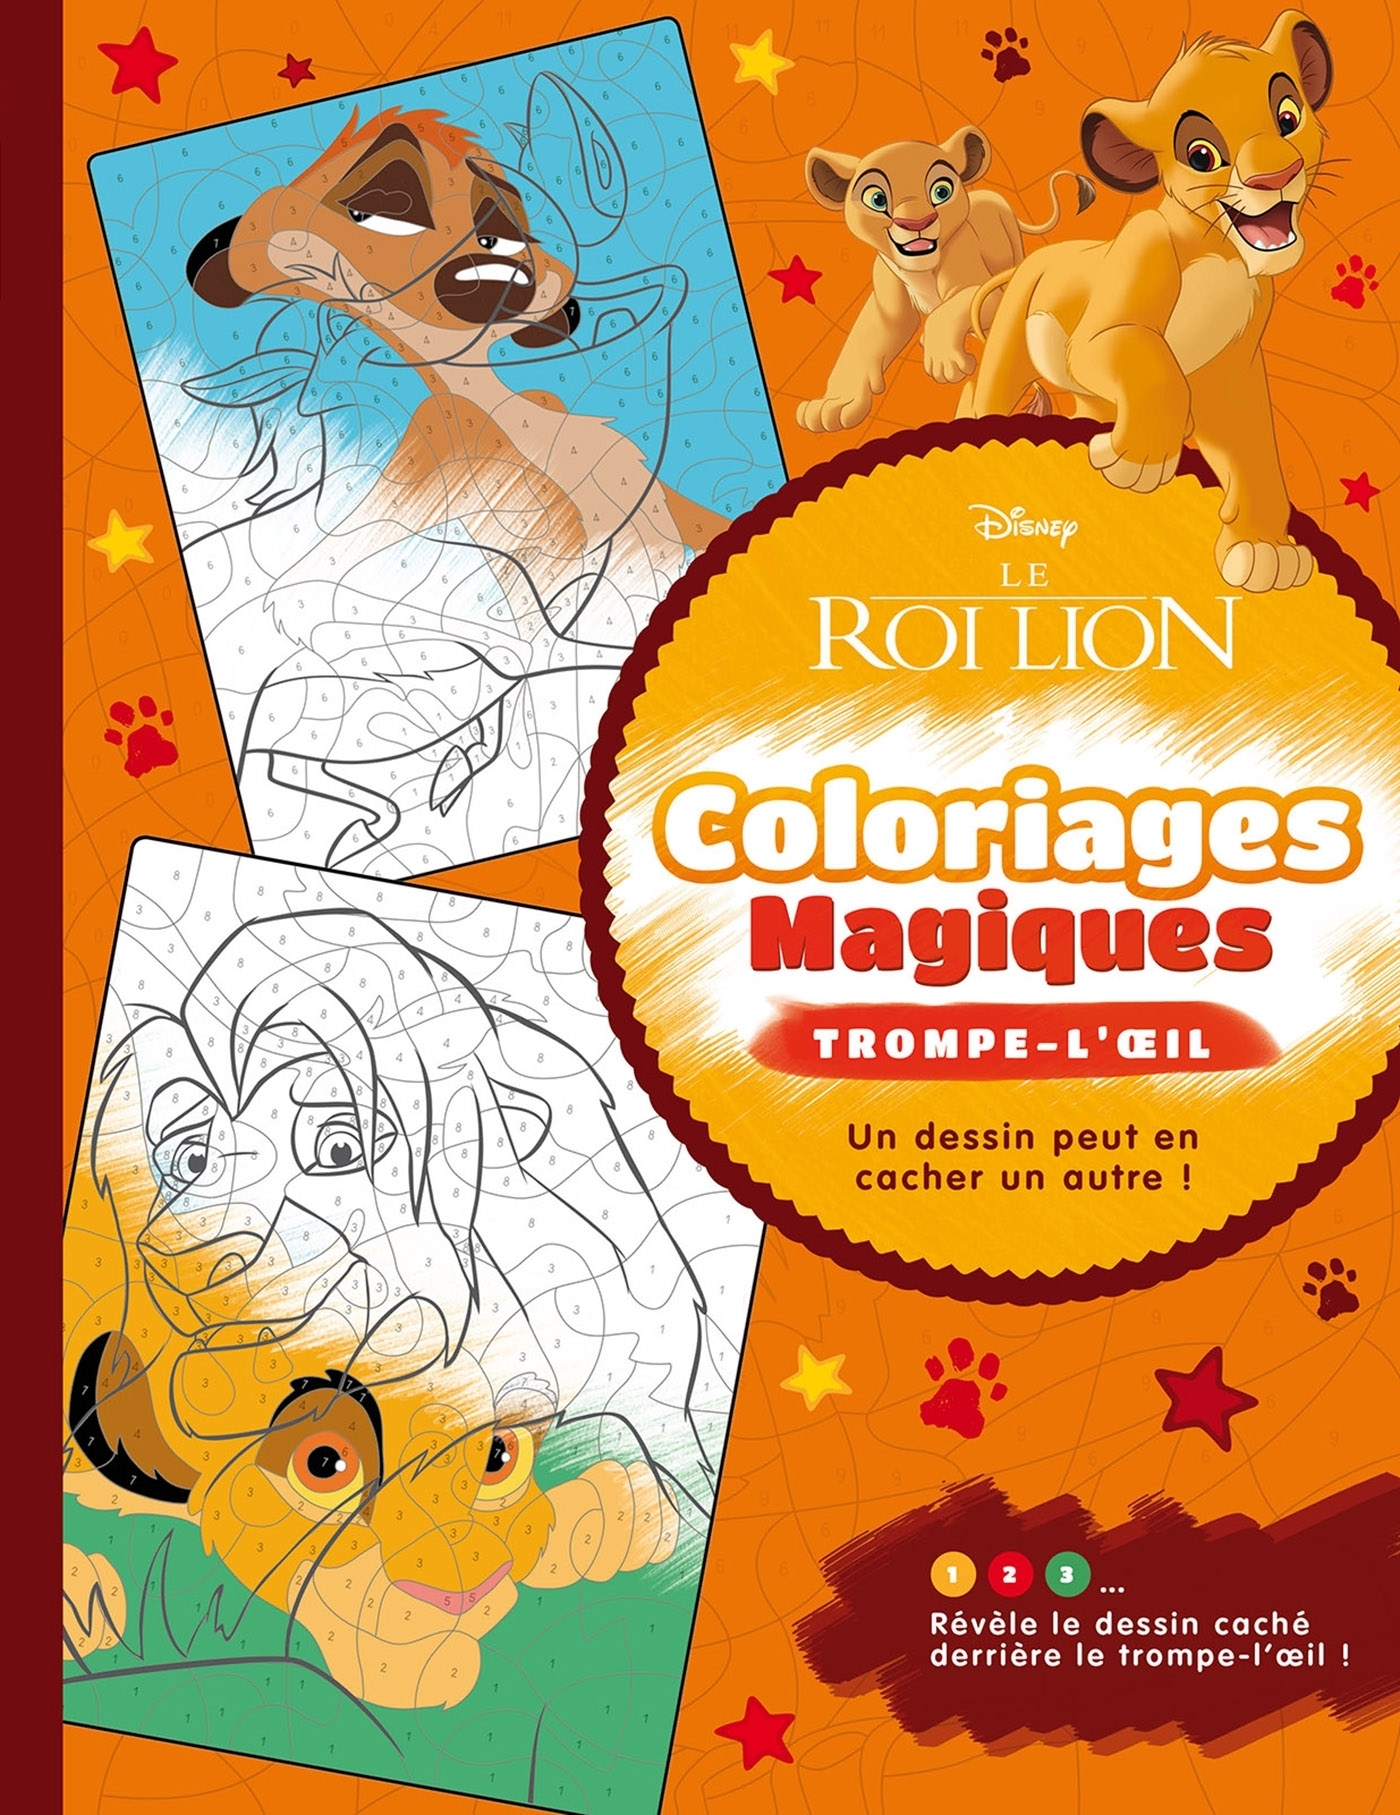 Coloriages mystères Disney - Saisons - - (EAN13 : 9782376715177) | Hachette  Heroes